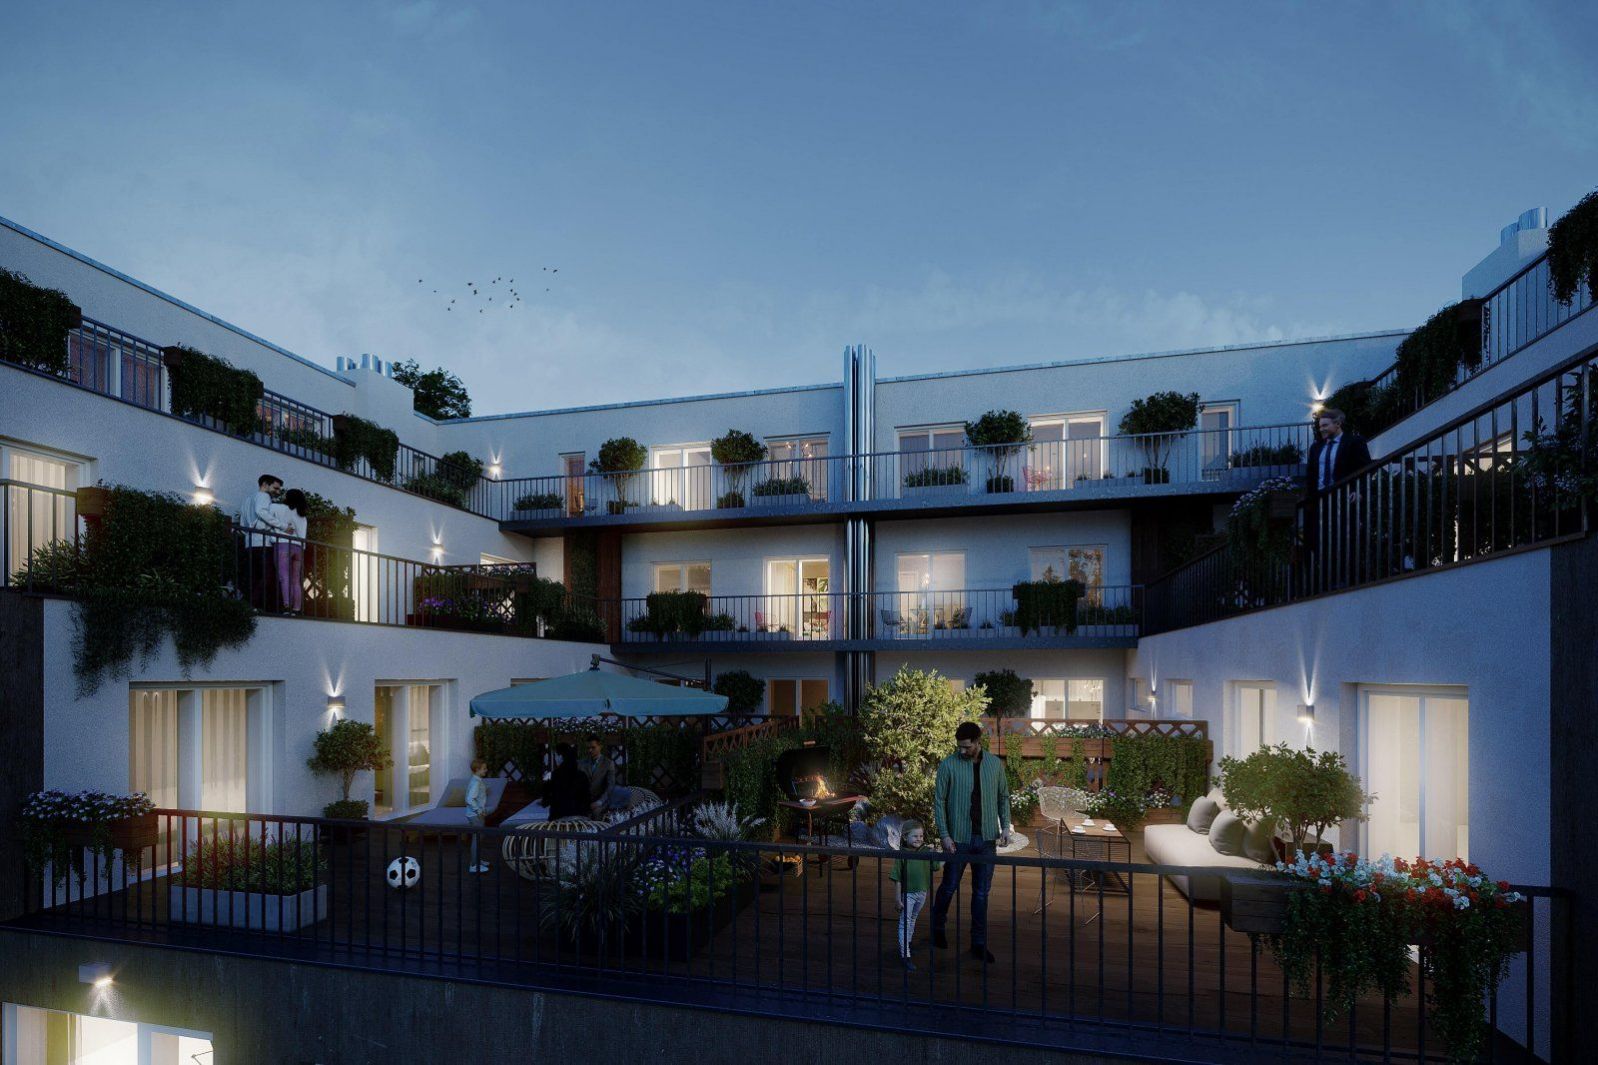 Rodinný byt 4+kk s prostornou terasou v bytovém projektu Zelené kaskády. Akční sleva 579 200 Kč., obrázek č. 3